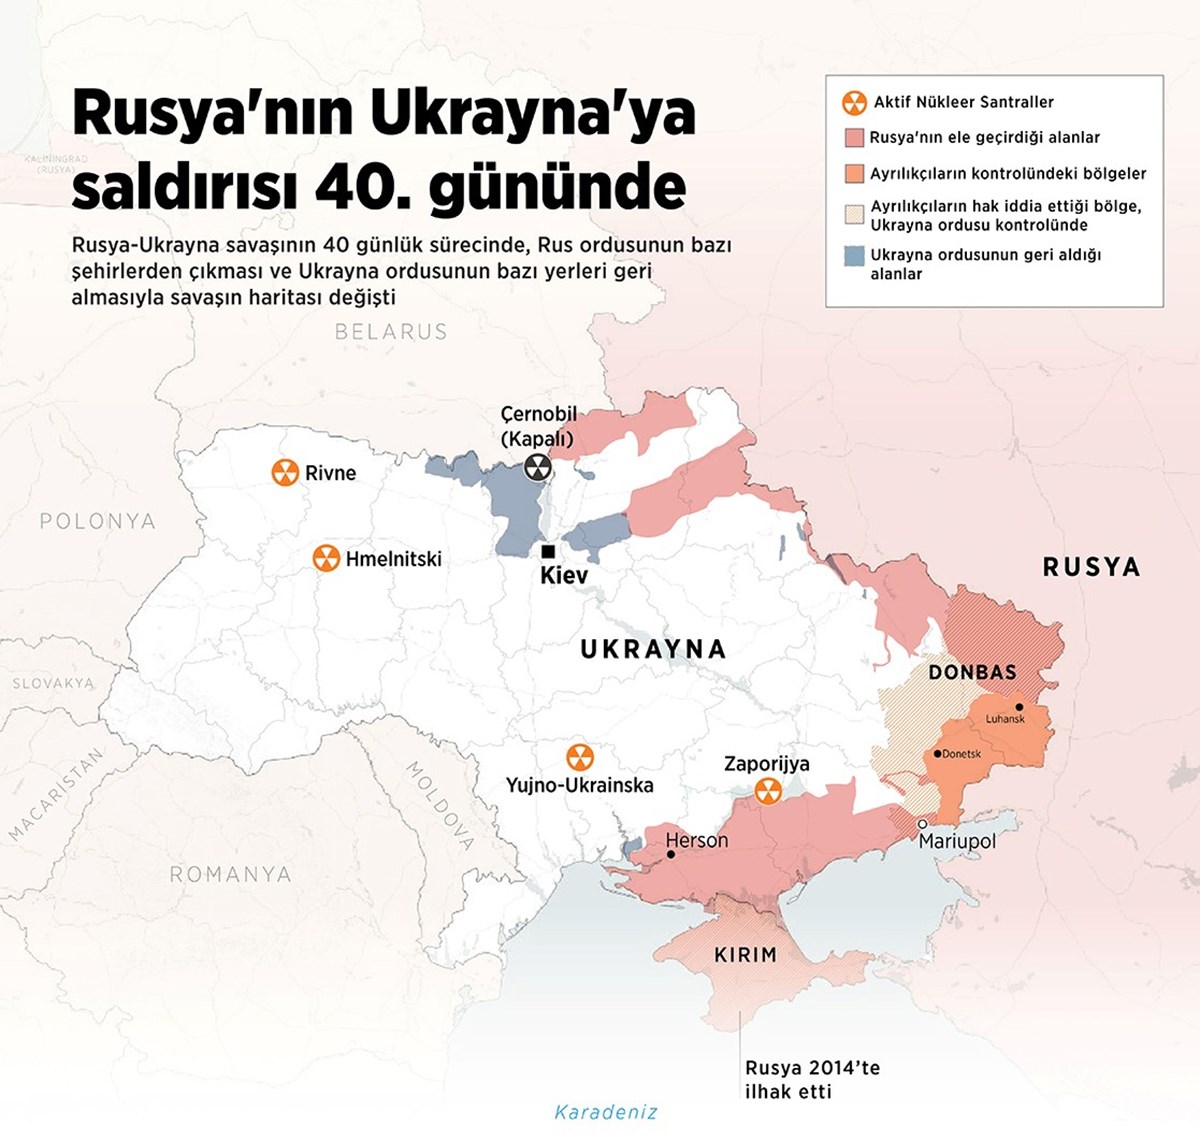 Rusya ile Ukrayna savaşı 40. gününde devam ediyor.